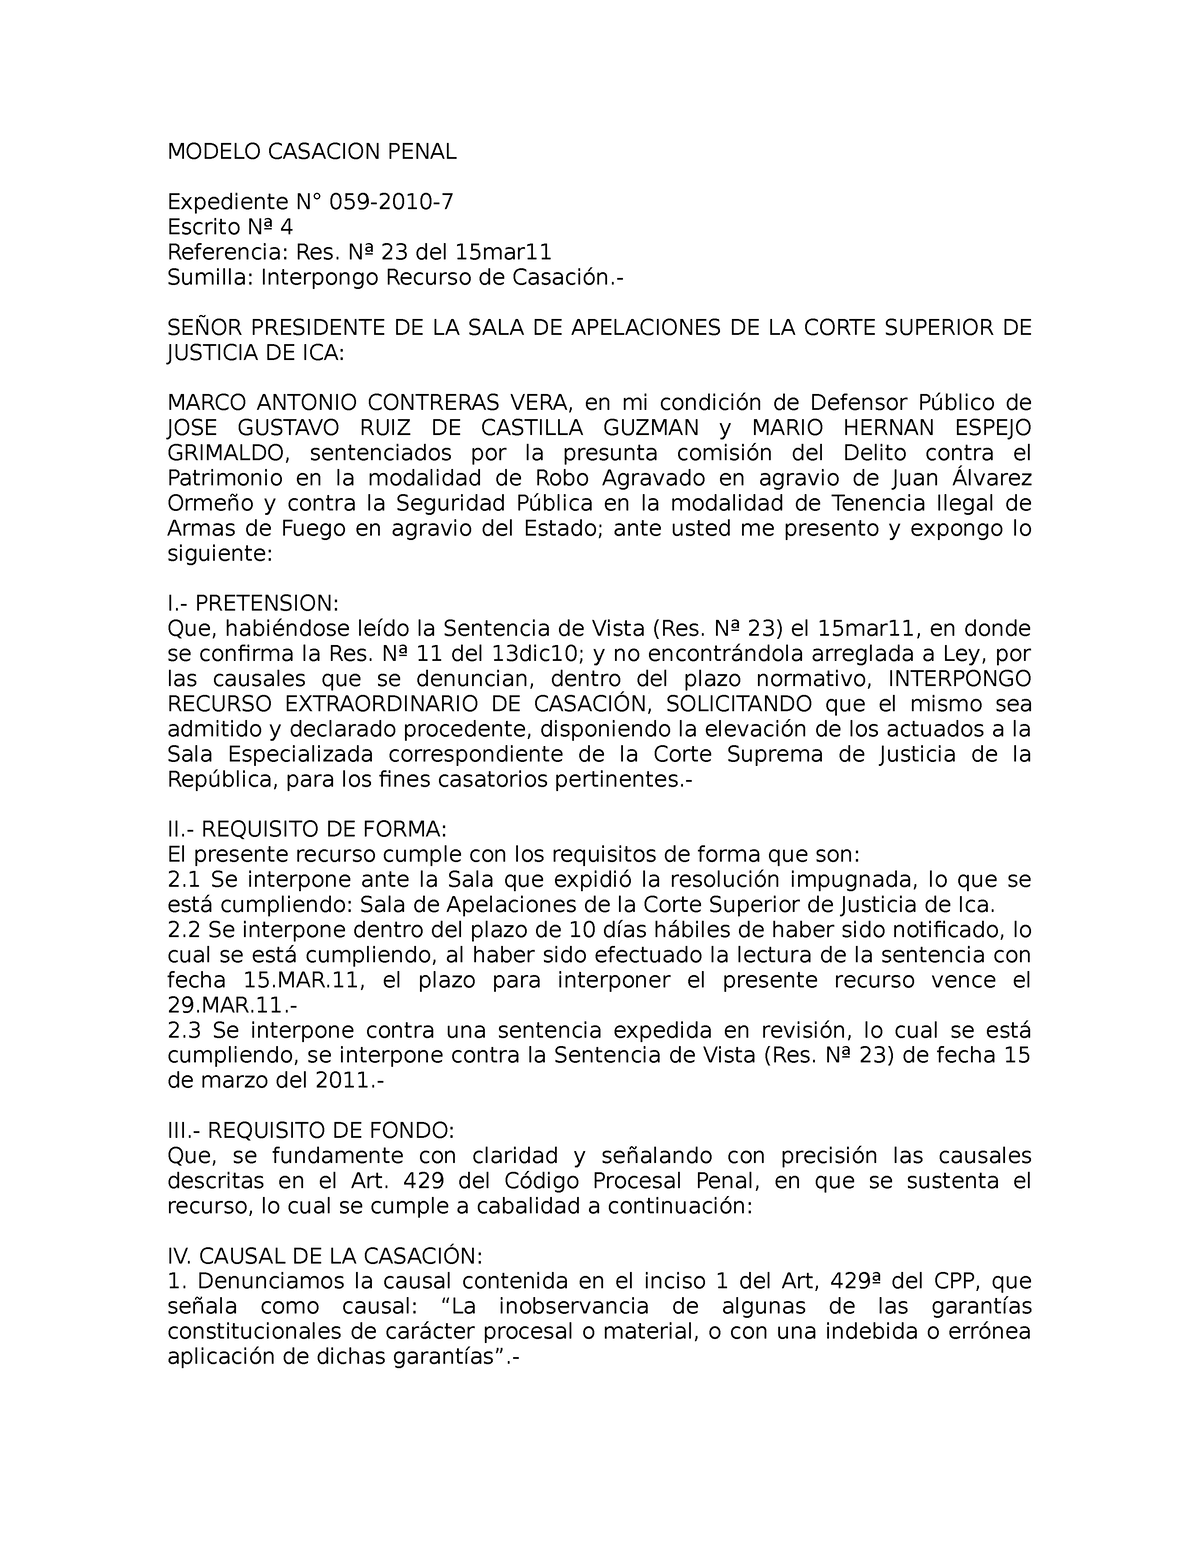 Modelo Casacion Penal - escrito - MODELO CASACION PENAL Expediente N°  059-2010- Escrito Nª 4 - Studocu